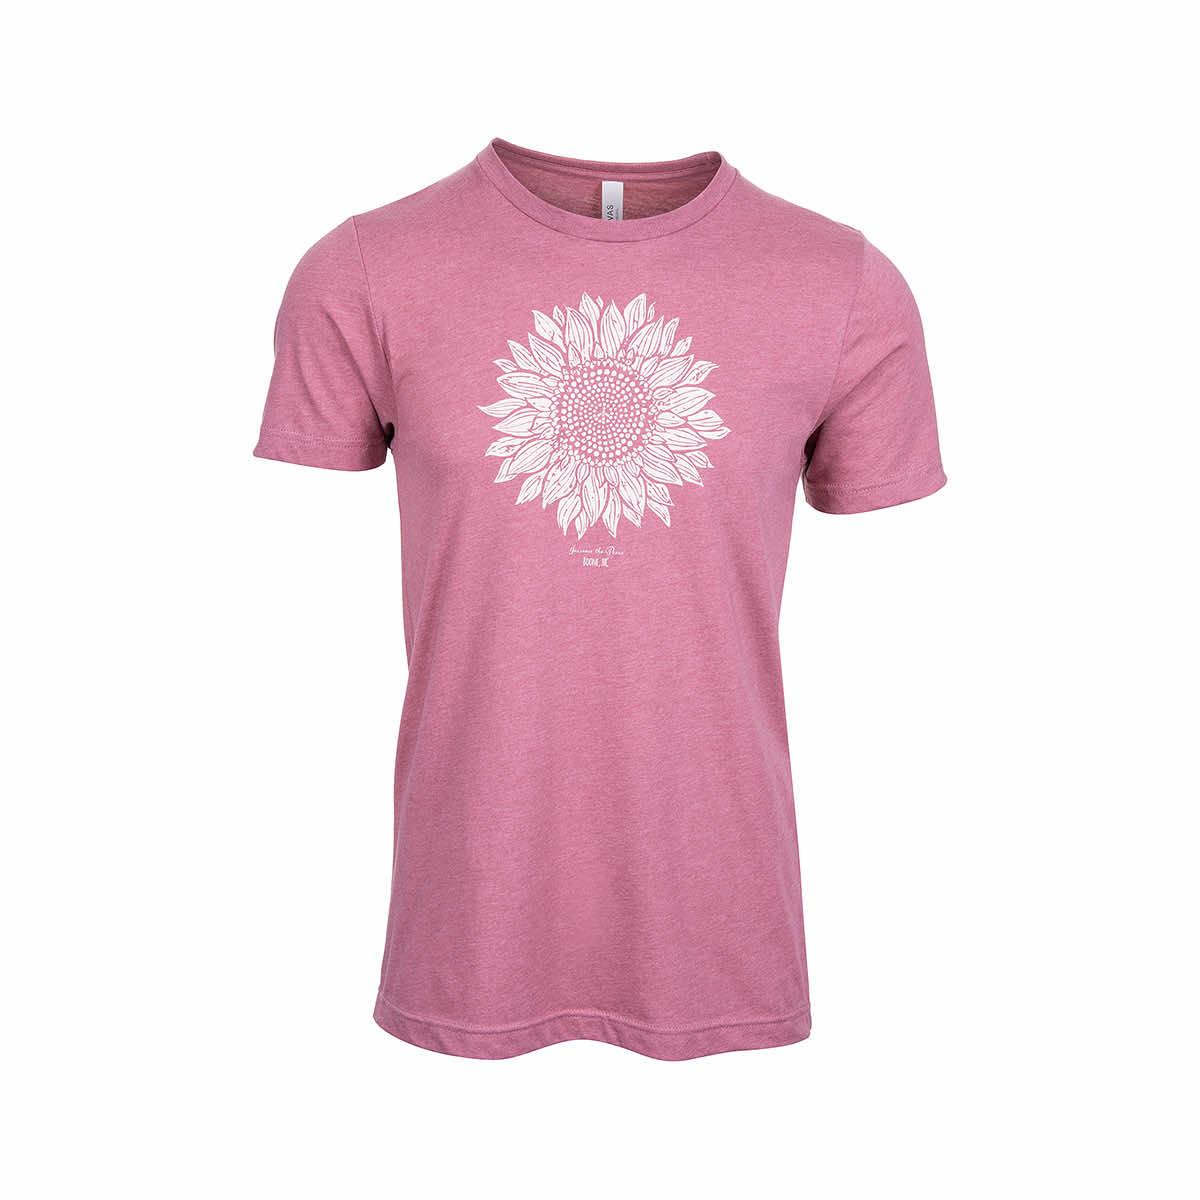  Boone Sunflower Short Sleeve T- Shirt